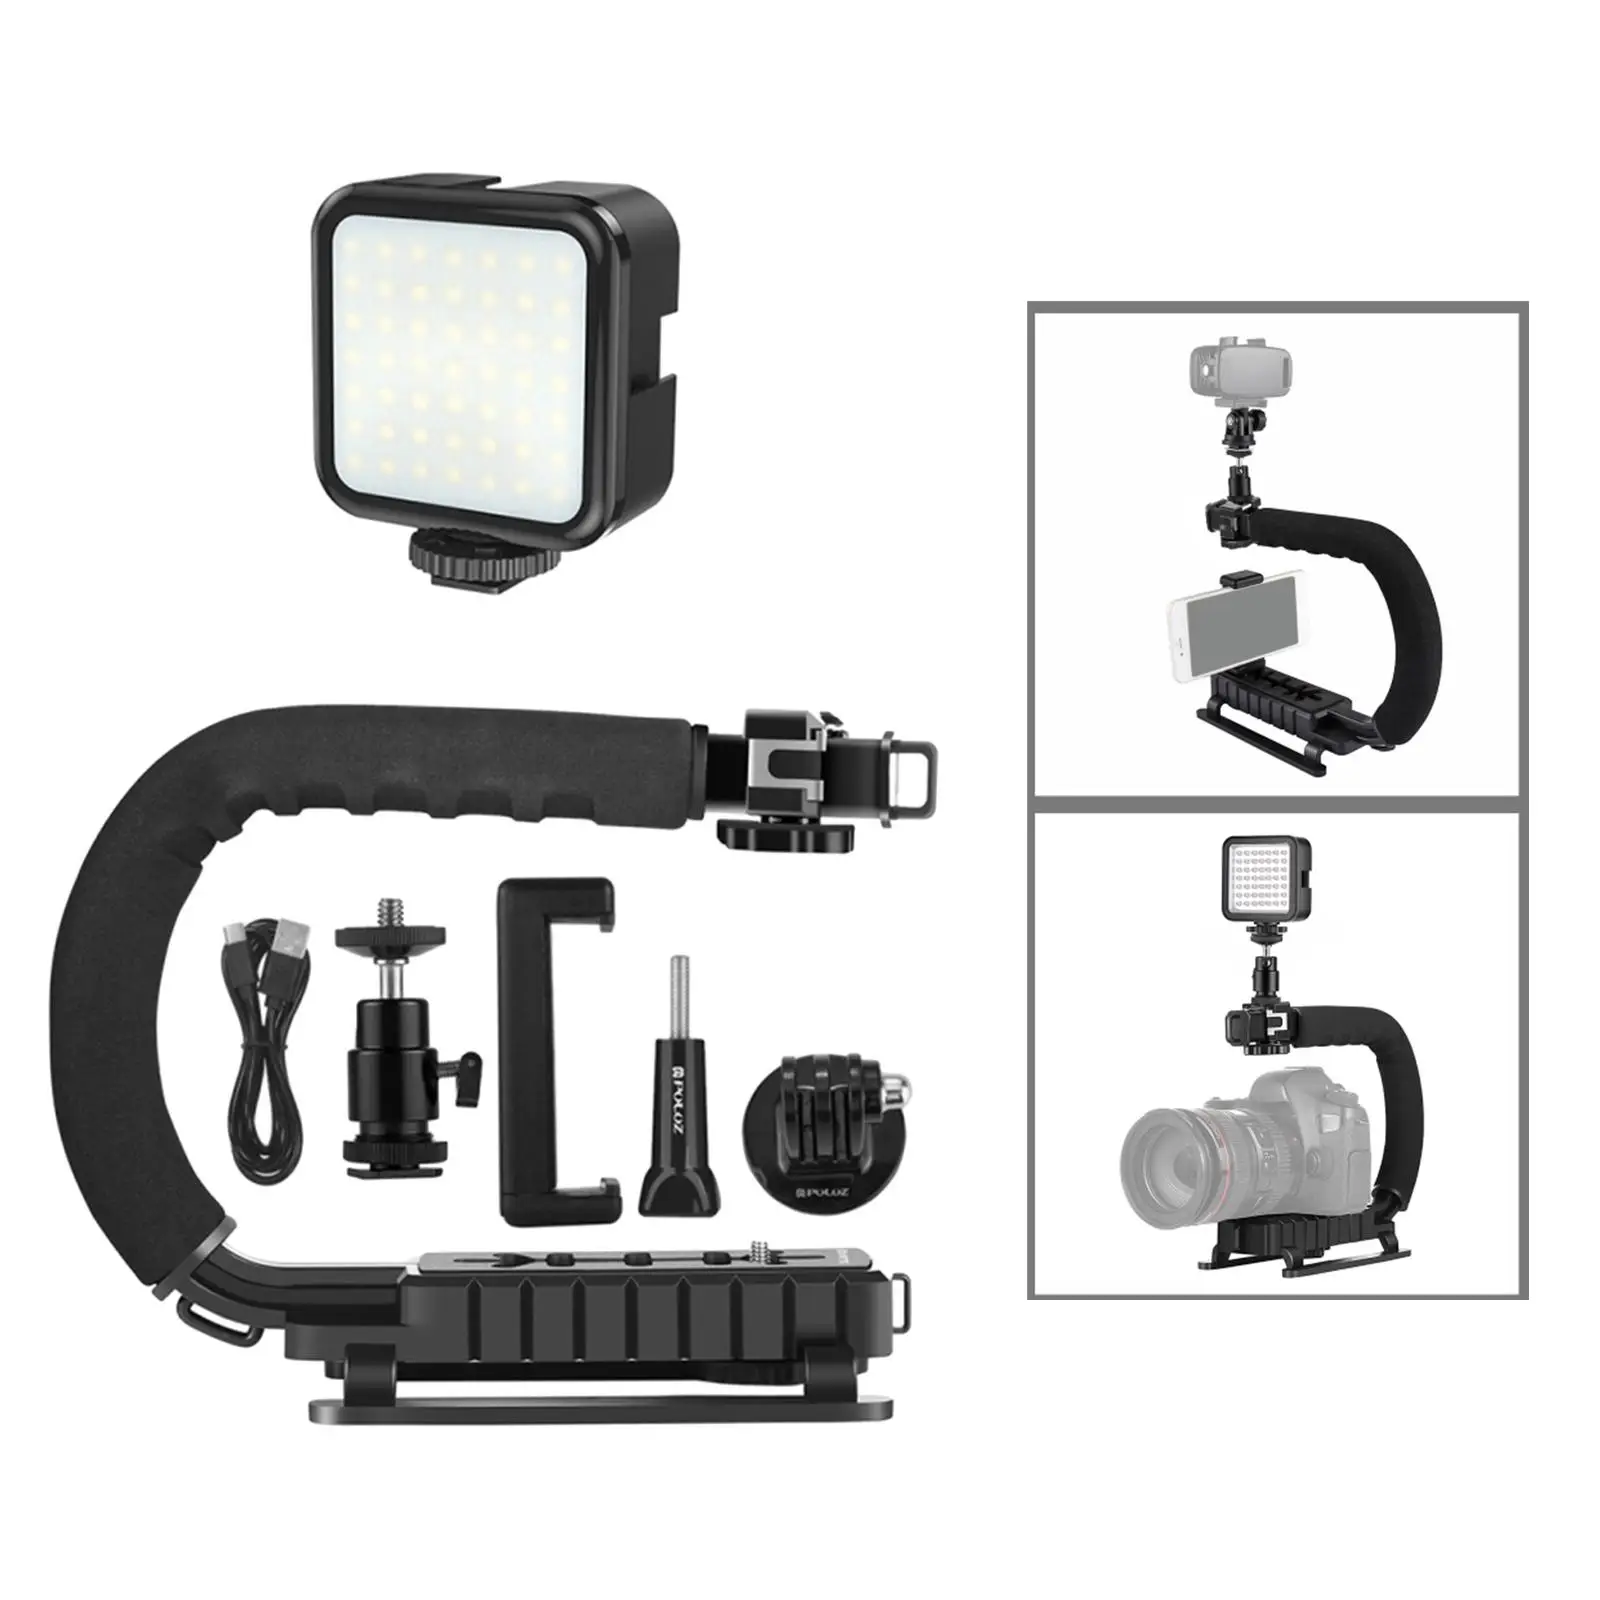 C Shape DV Bracket Stabilizer LED Fill Light Kit for All Slr Cameras and Home DV Camera